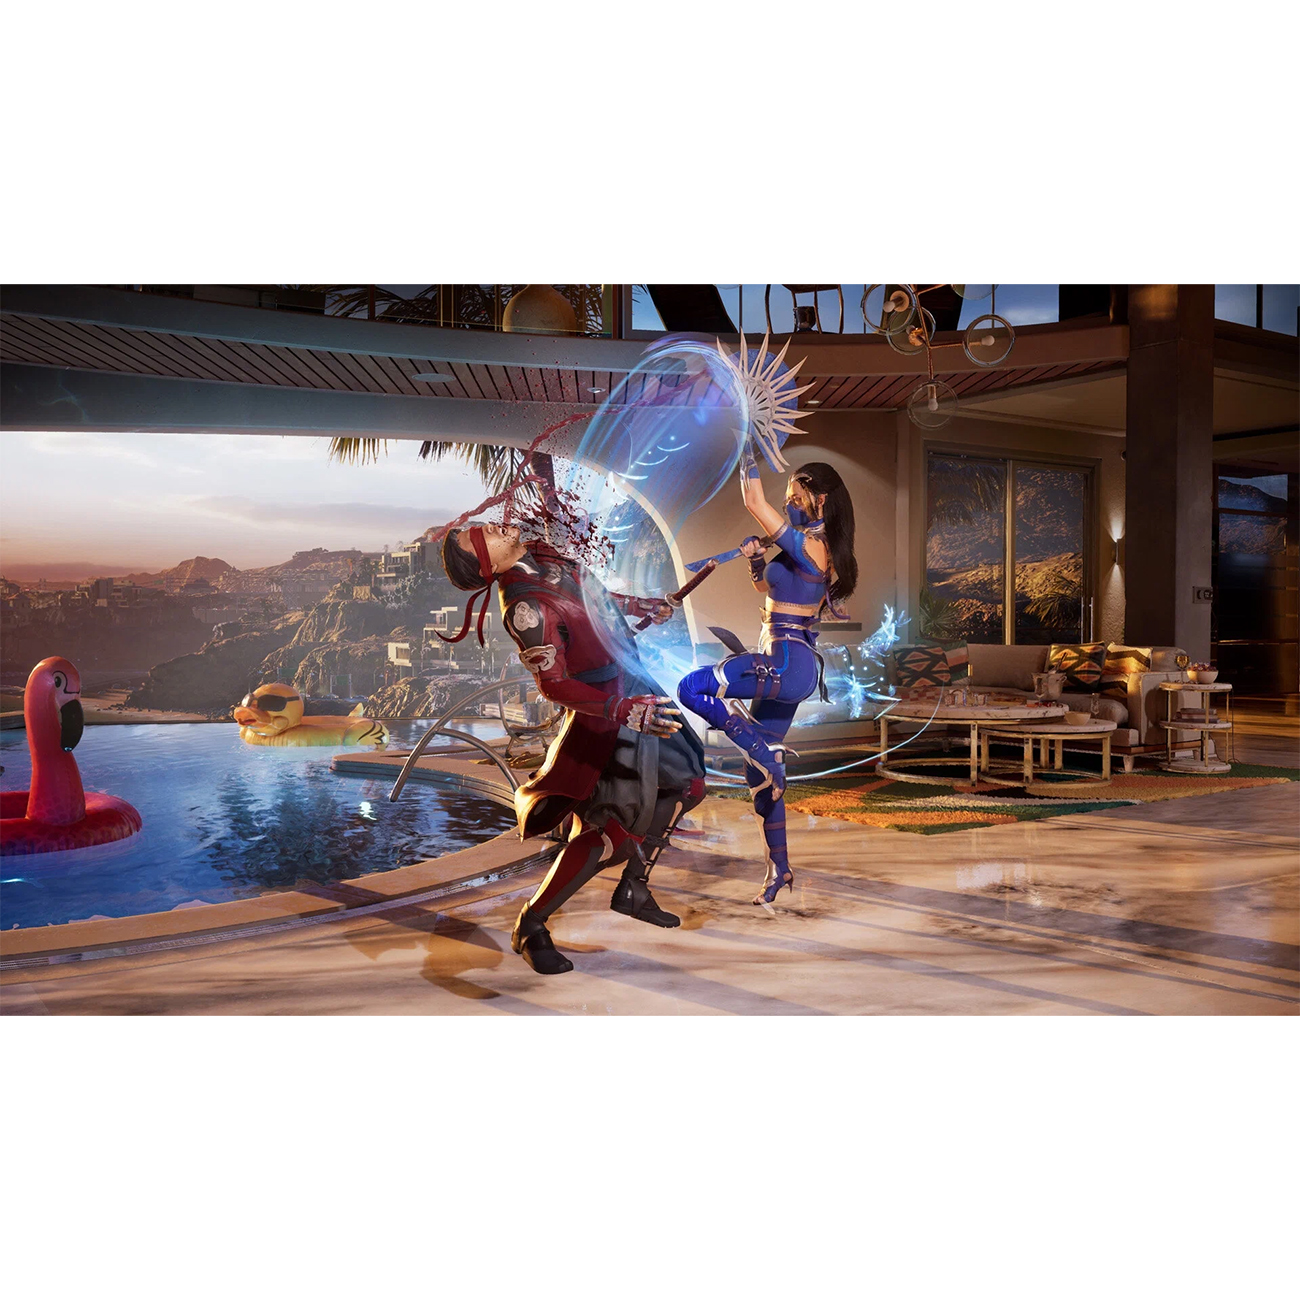 Игра: Mortal Kombat 1 для PS5 (диск, русские субтитры)